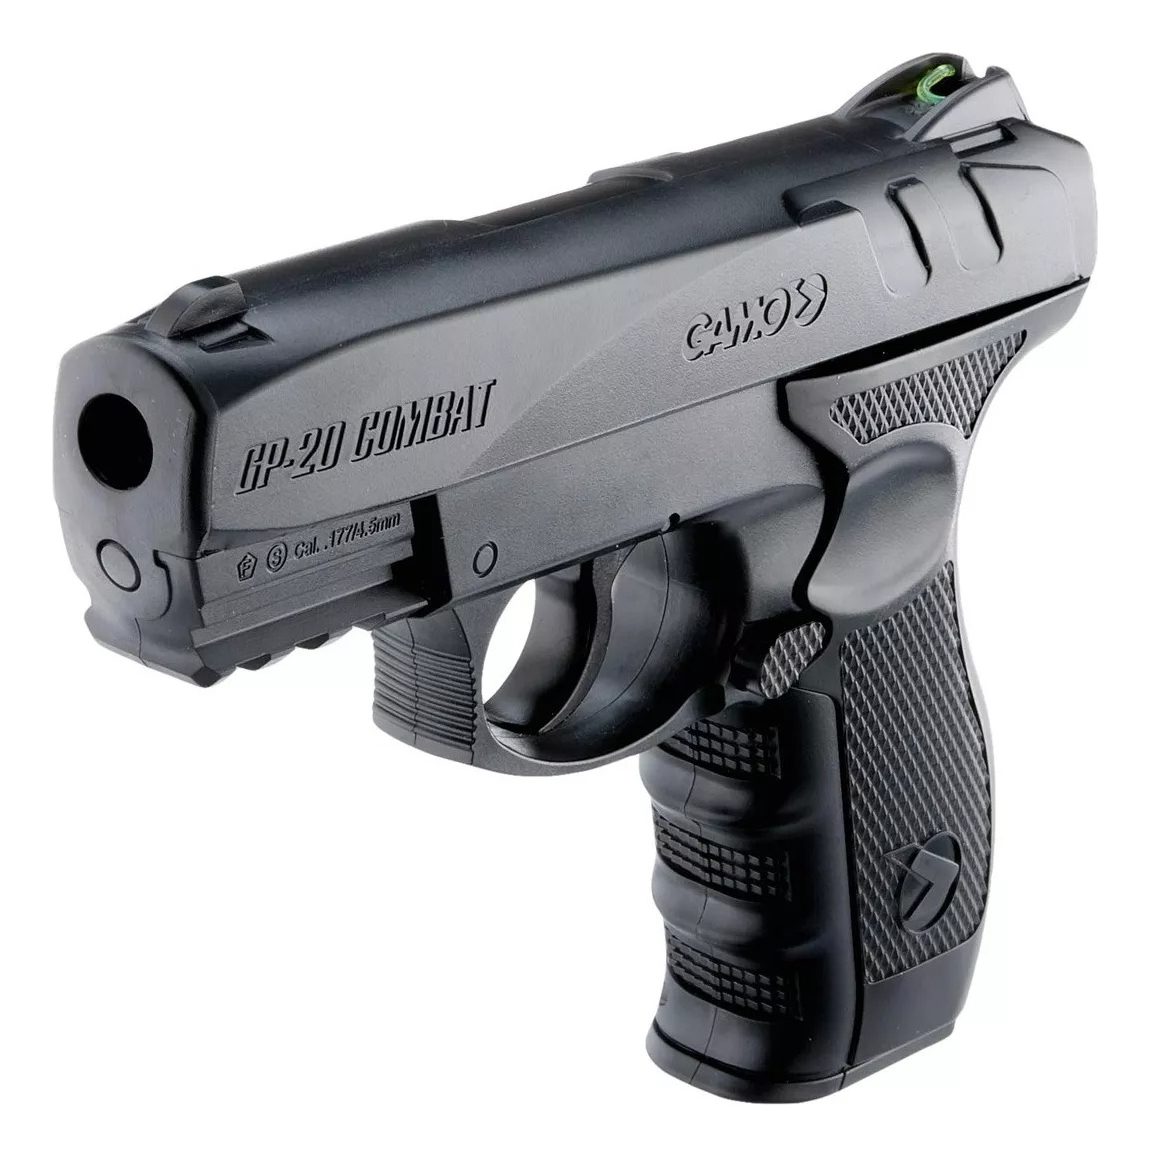 Comprar en linea Pistola GAMO GP-20 Combat de marca GAMO • Tienda de  Pistolas CO2 • Mundilar Airguns